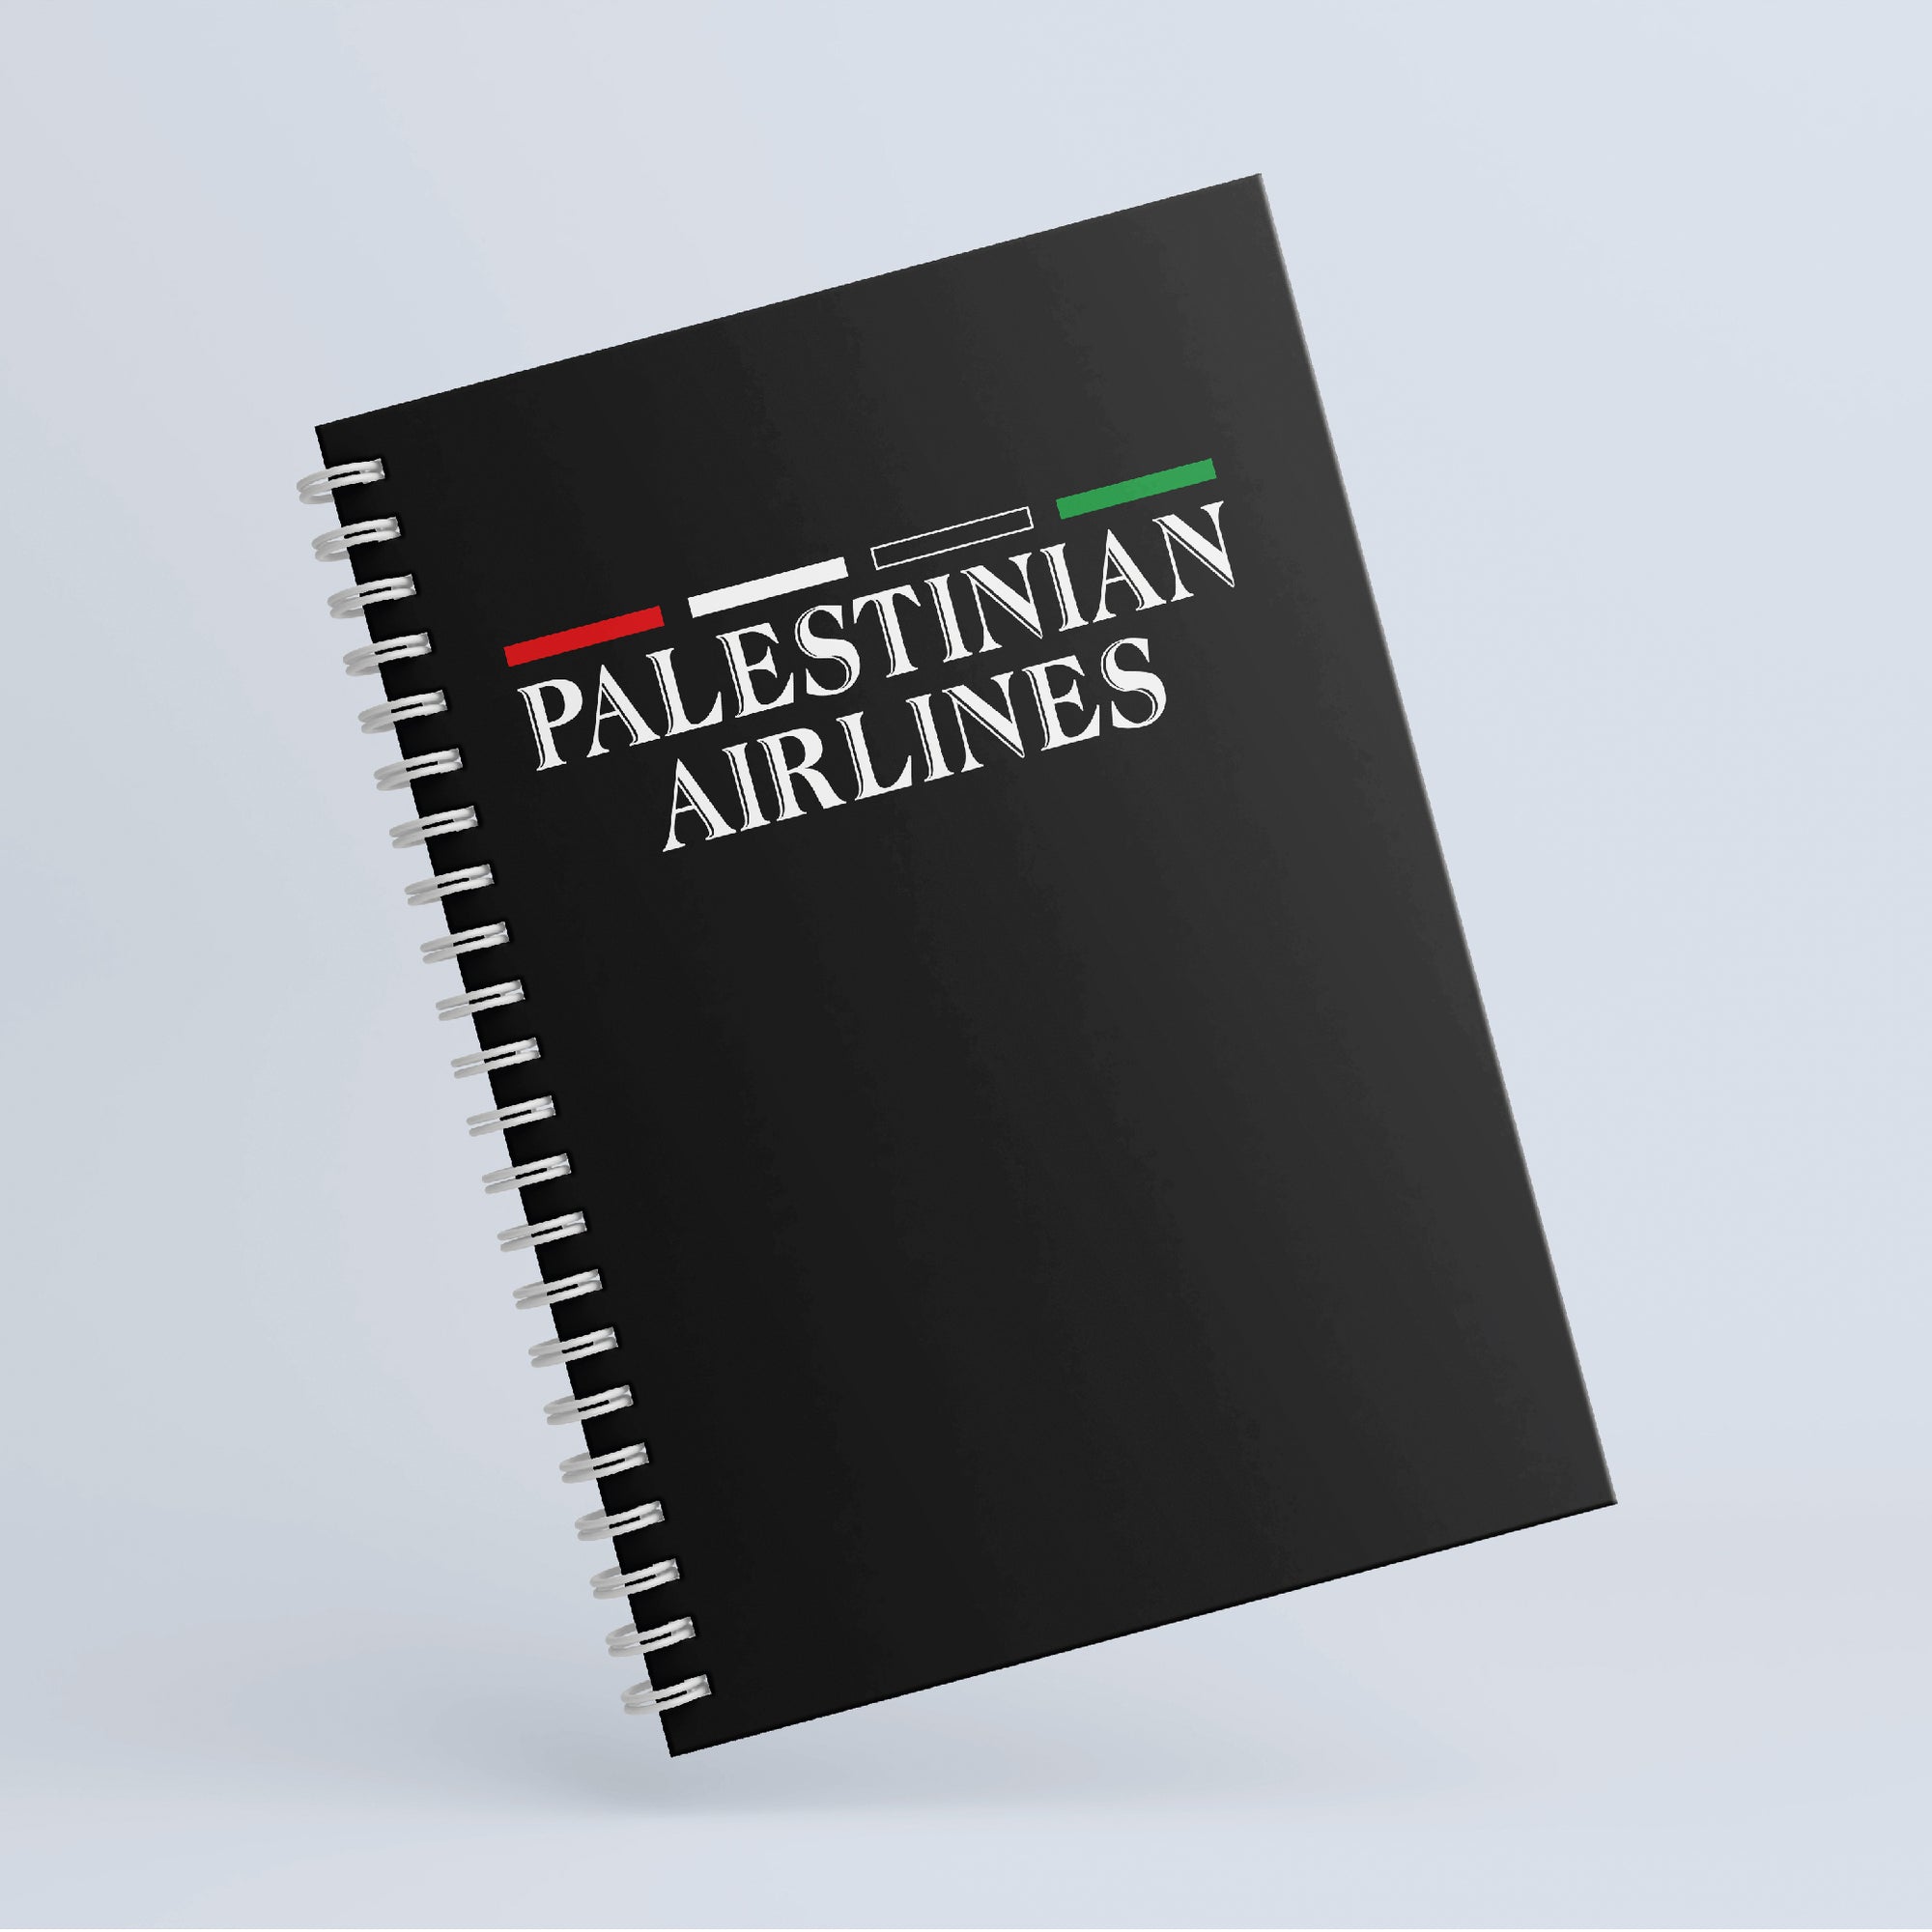 نوت بوك - Palestinian airlines